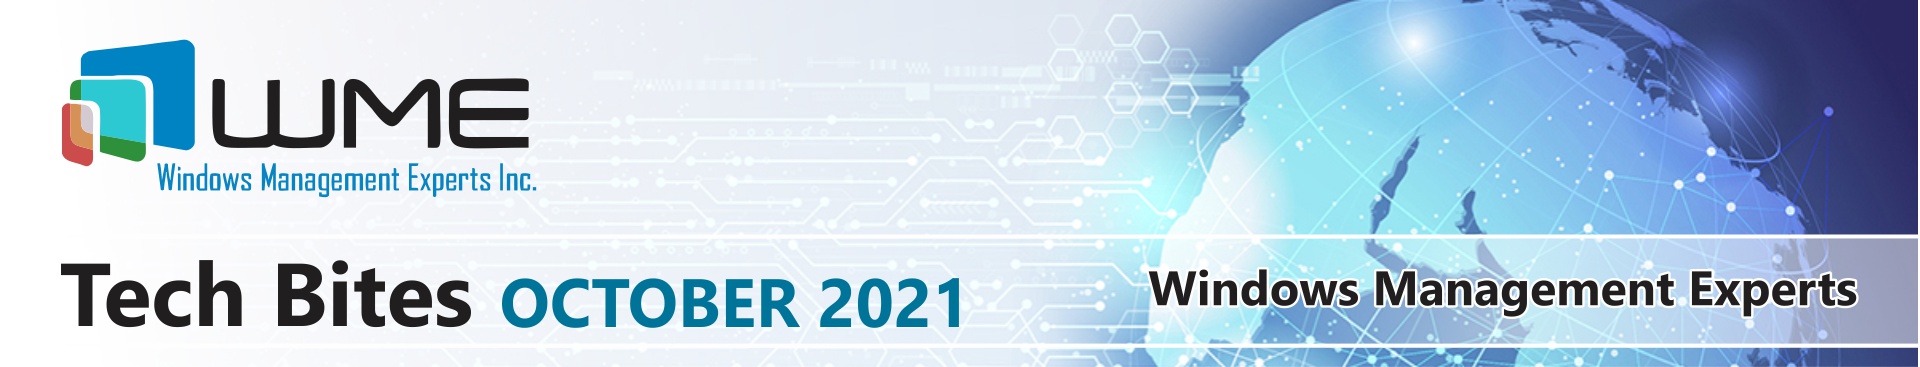 Header - 2021-10 (October 2021)